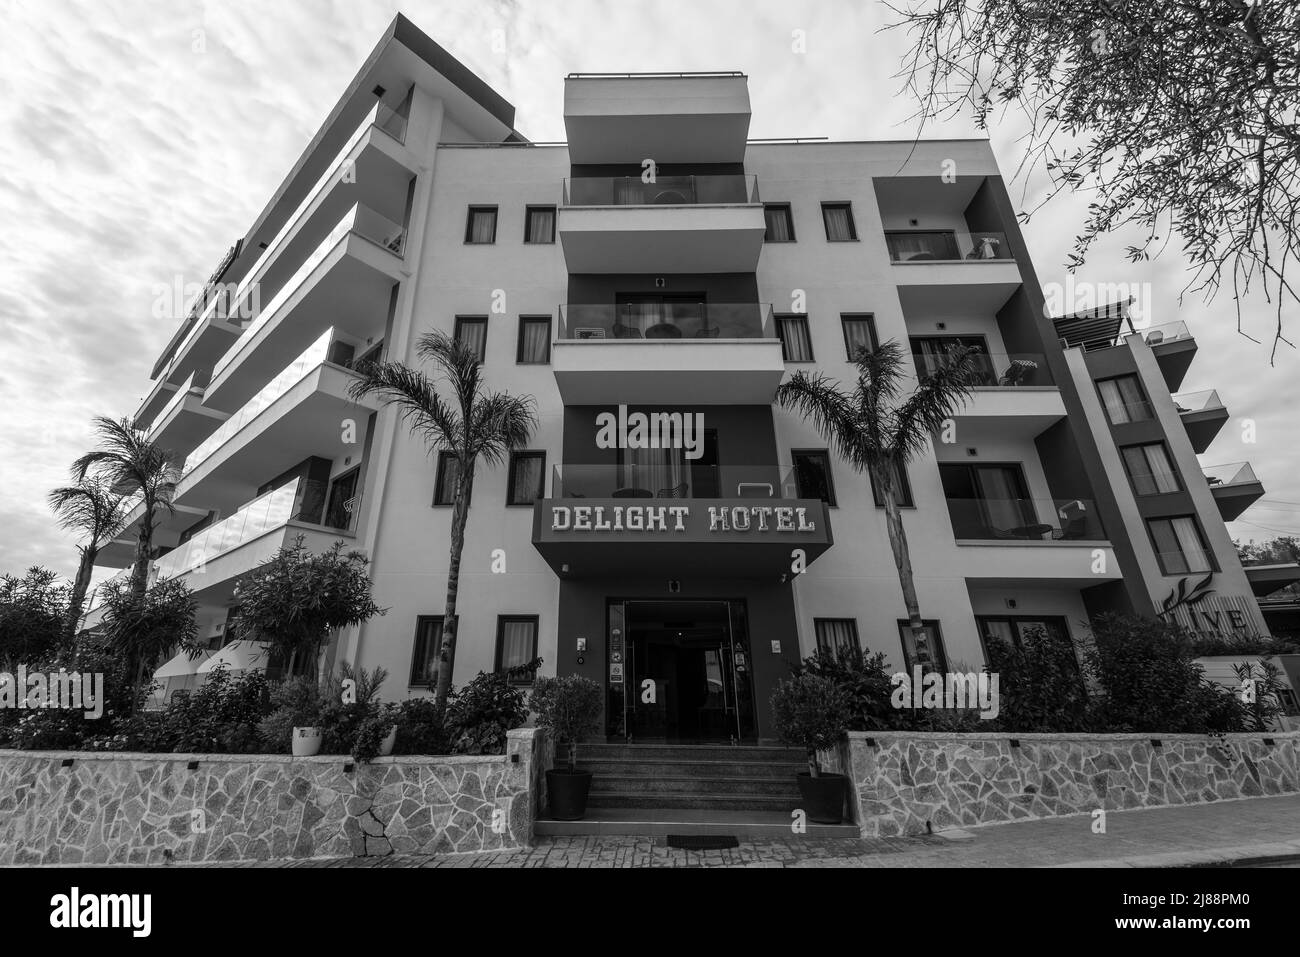 Ksamil, Albania - 9 de septiembre de 2021: Vista del Hotel Delight en Ksamil, Albania. Fotografía en blanco y negro. Foto de stock